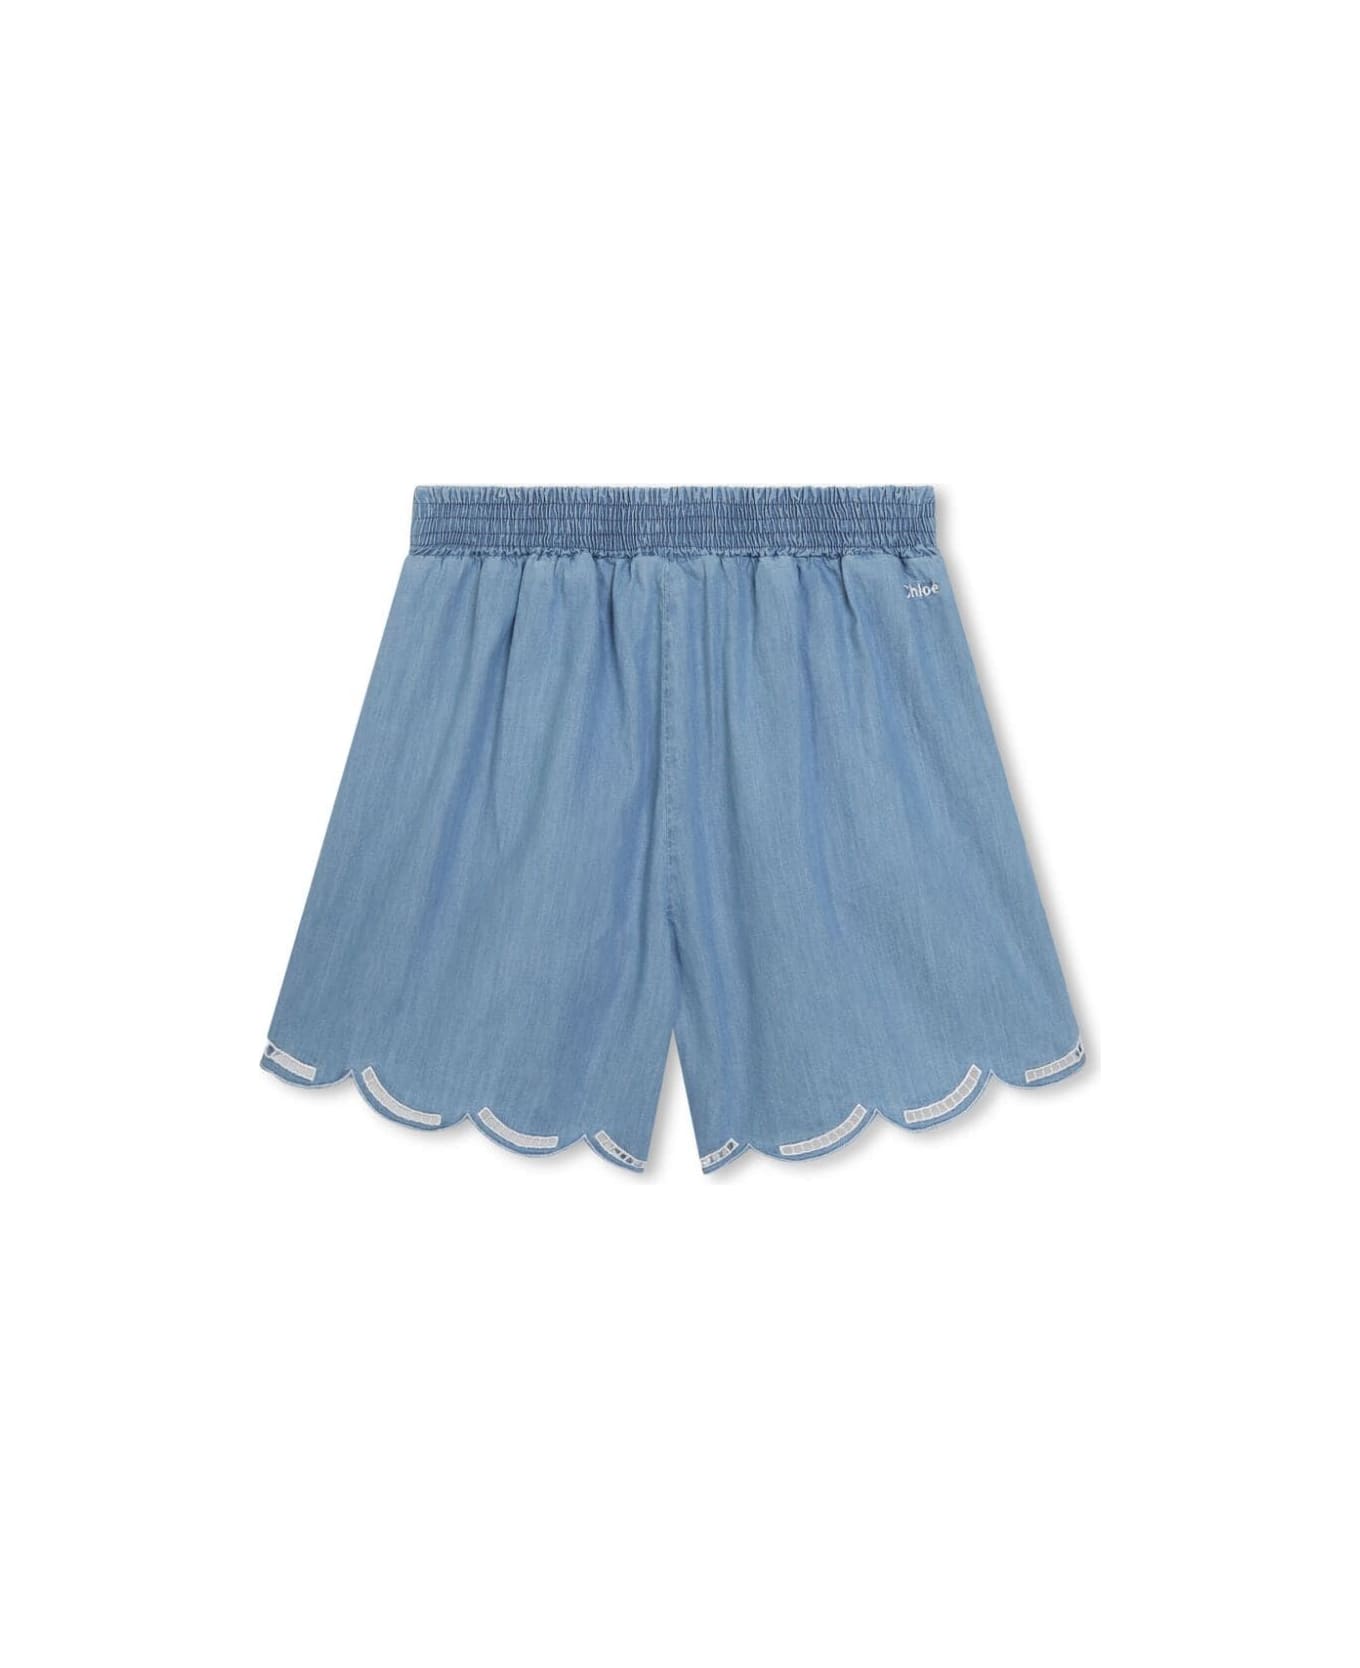 Chloé Denim Shorts - Denim Blue ボトムス